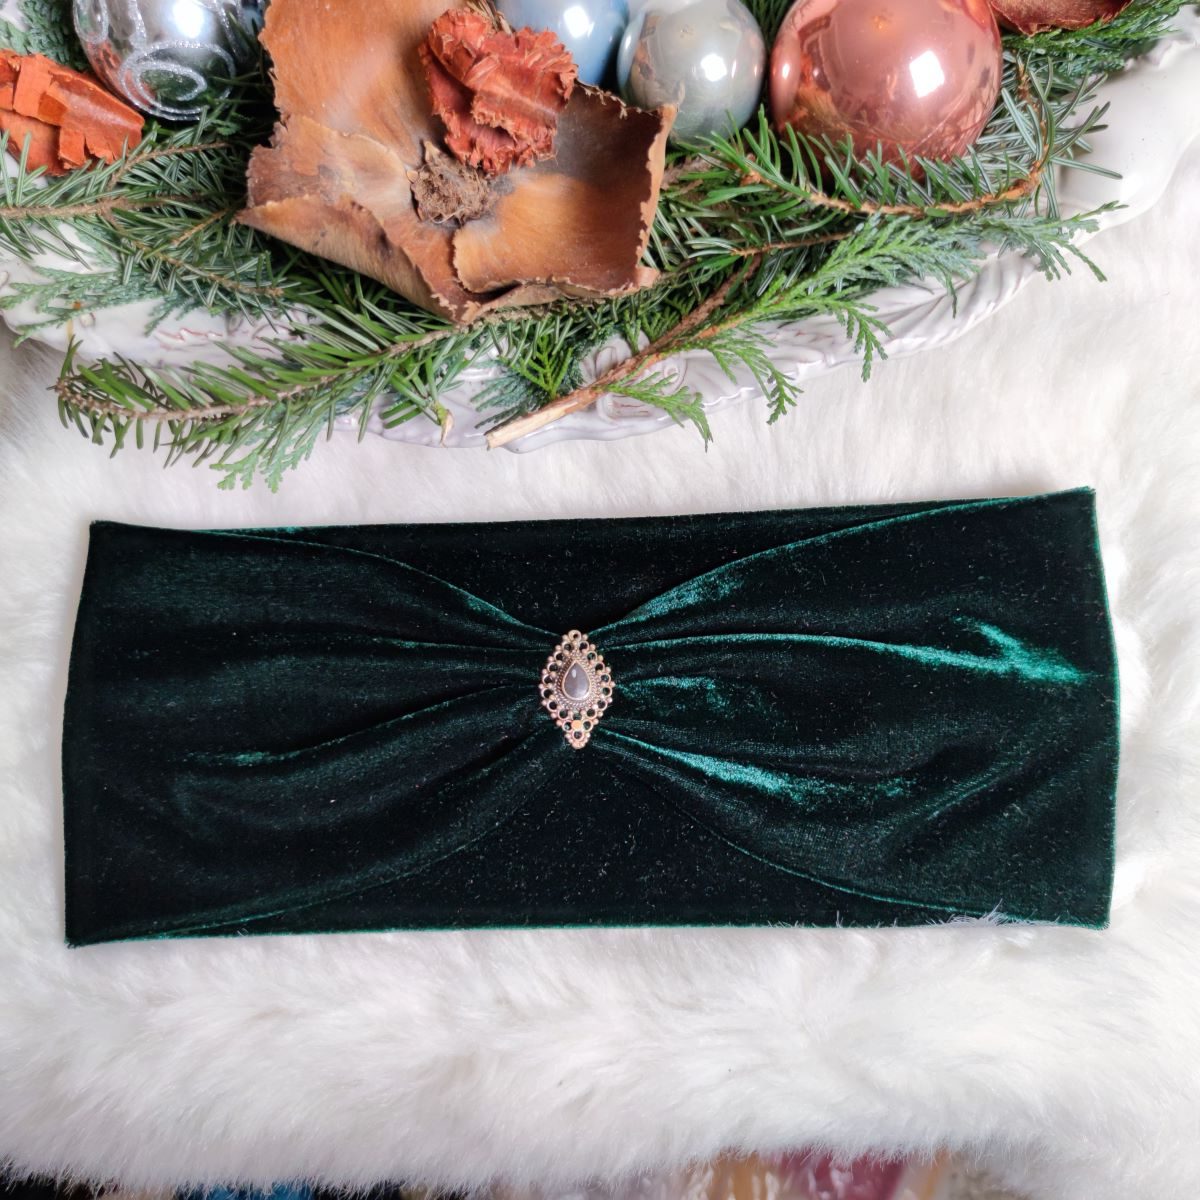 Serayi Haarband in Smaragdgrün aus Samt - mit Edelsteinen verziert